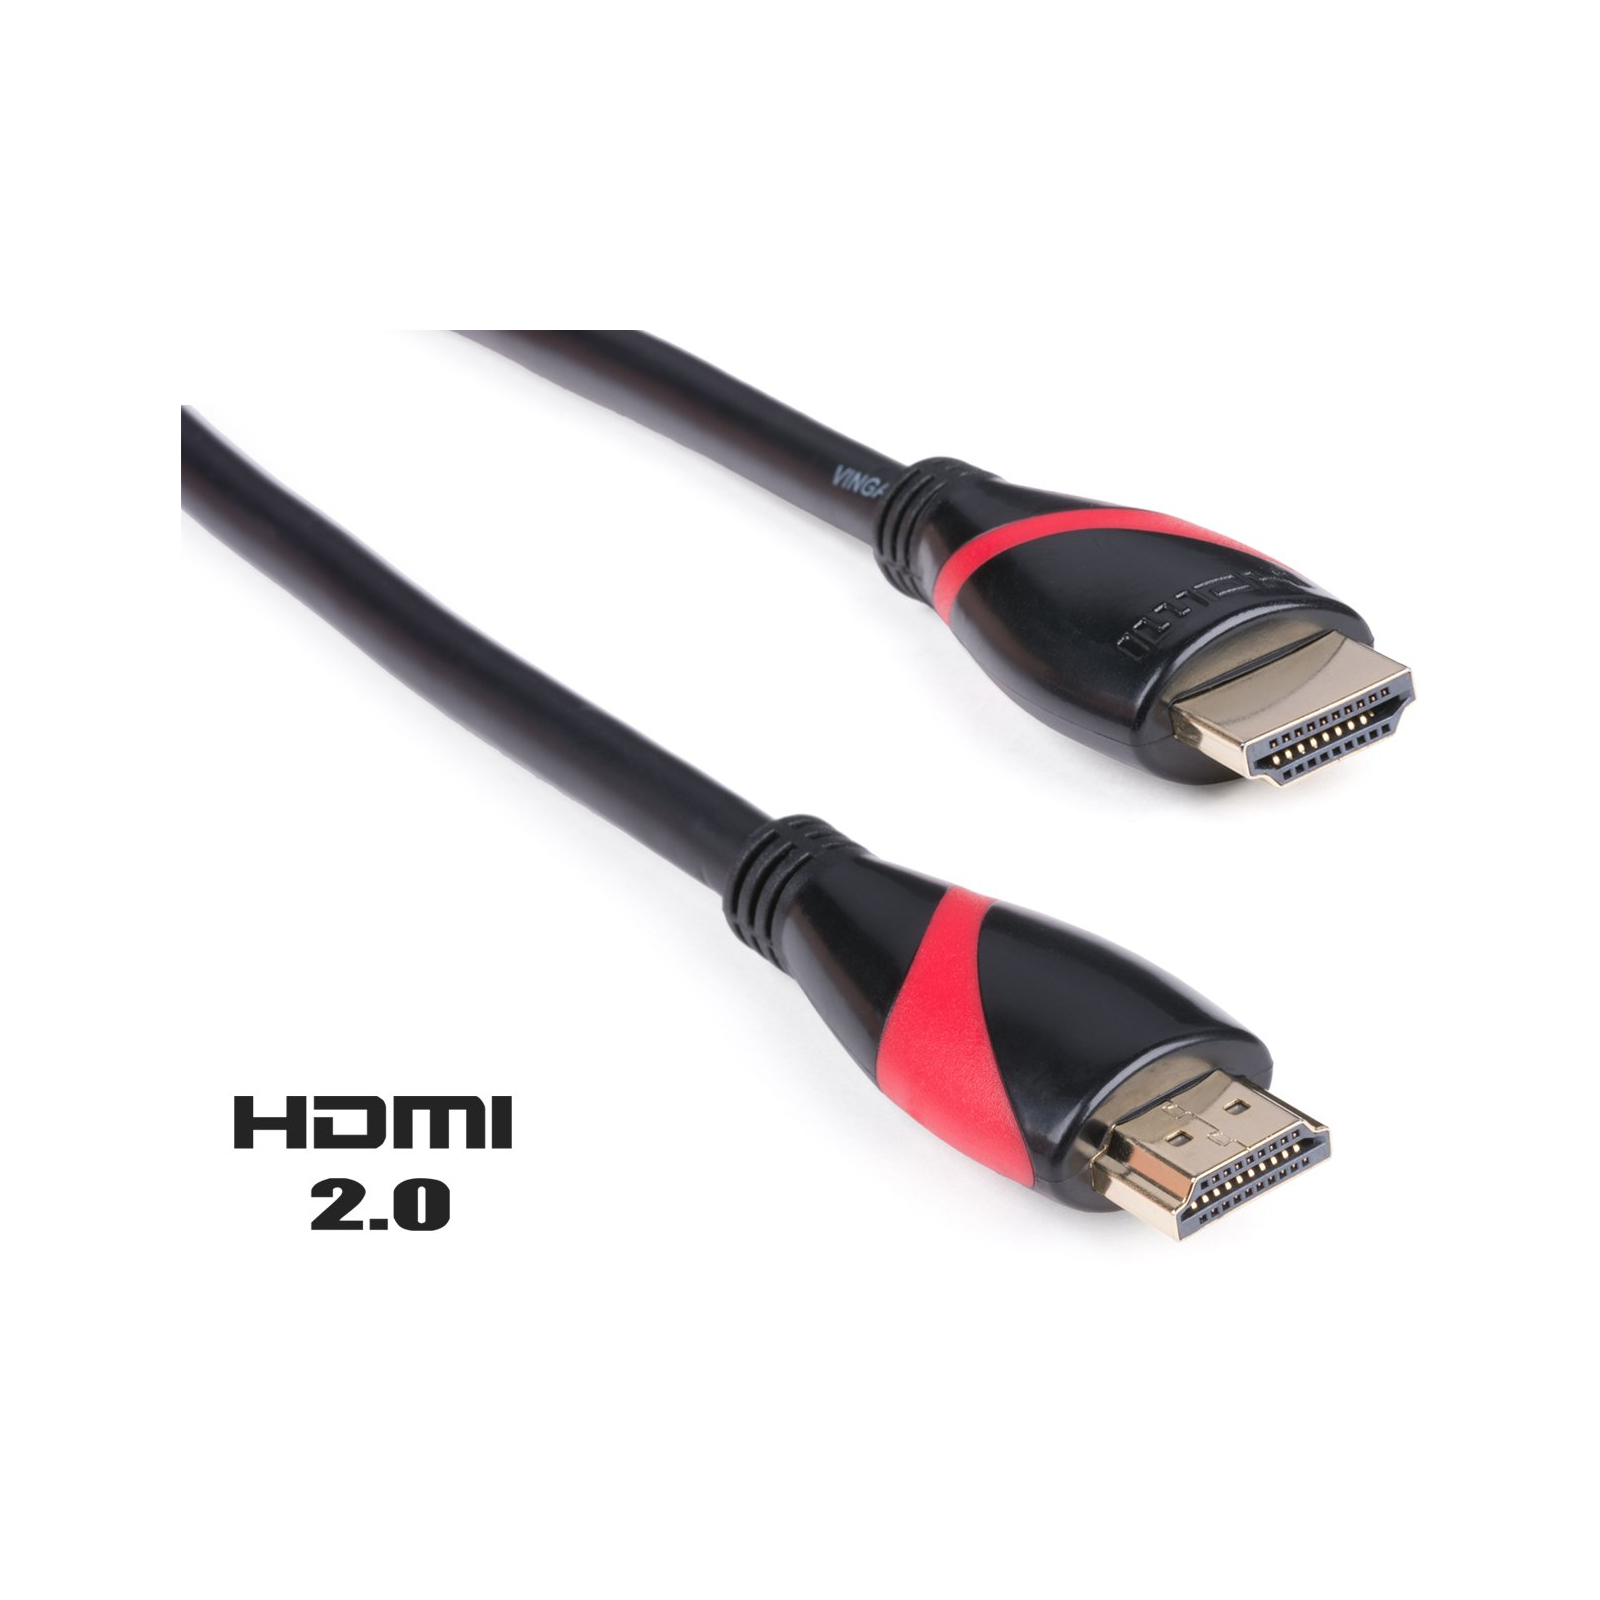 Кабель мультимедійний HDMI to HDMI 10.0m Vinga (HDMI02-10.0)